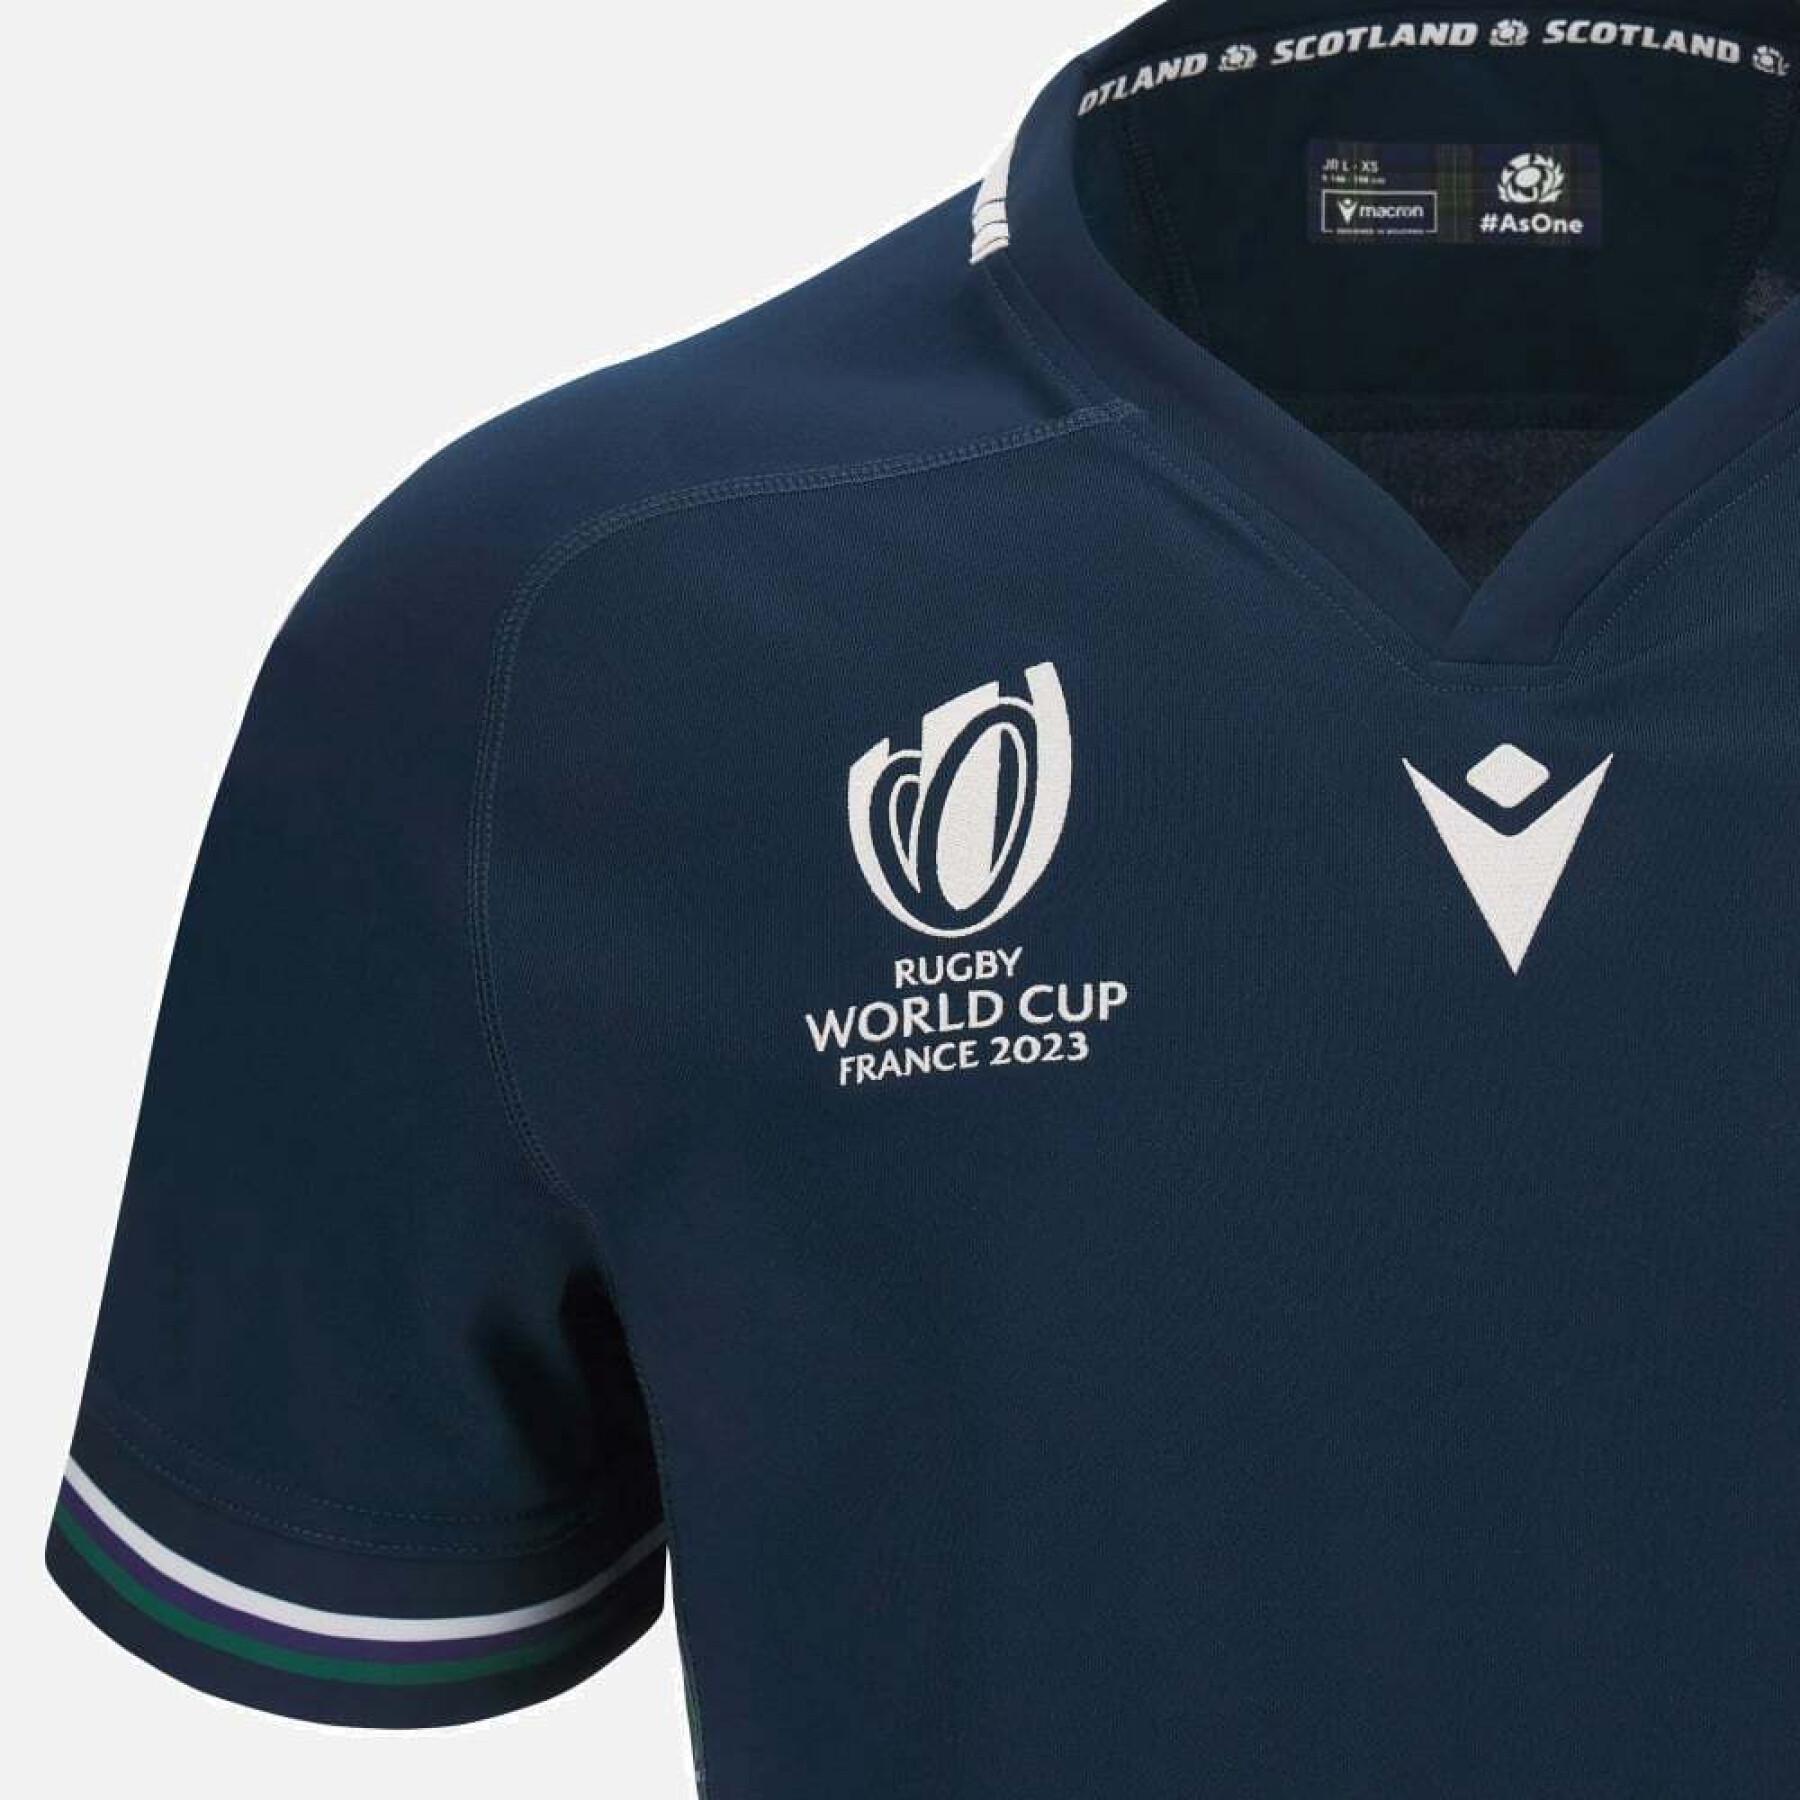 Camiseta primerra equipaciónde niño de la Copa Mundial de Rugby 2023 Écosse